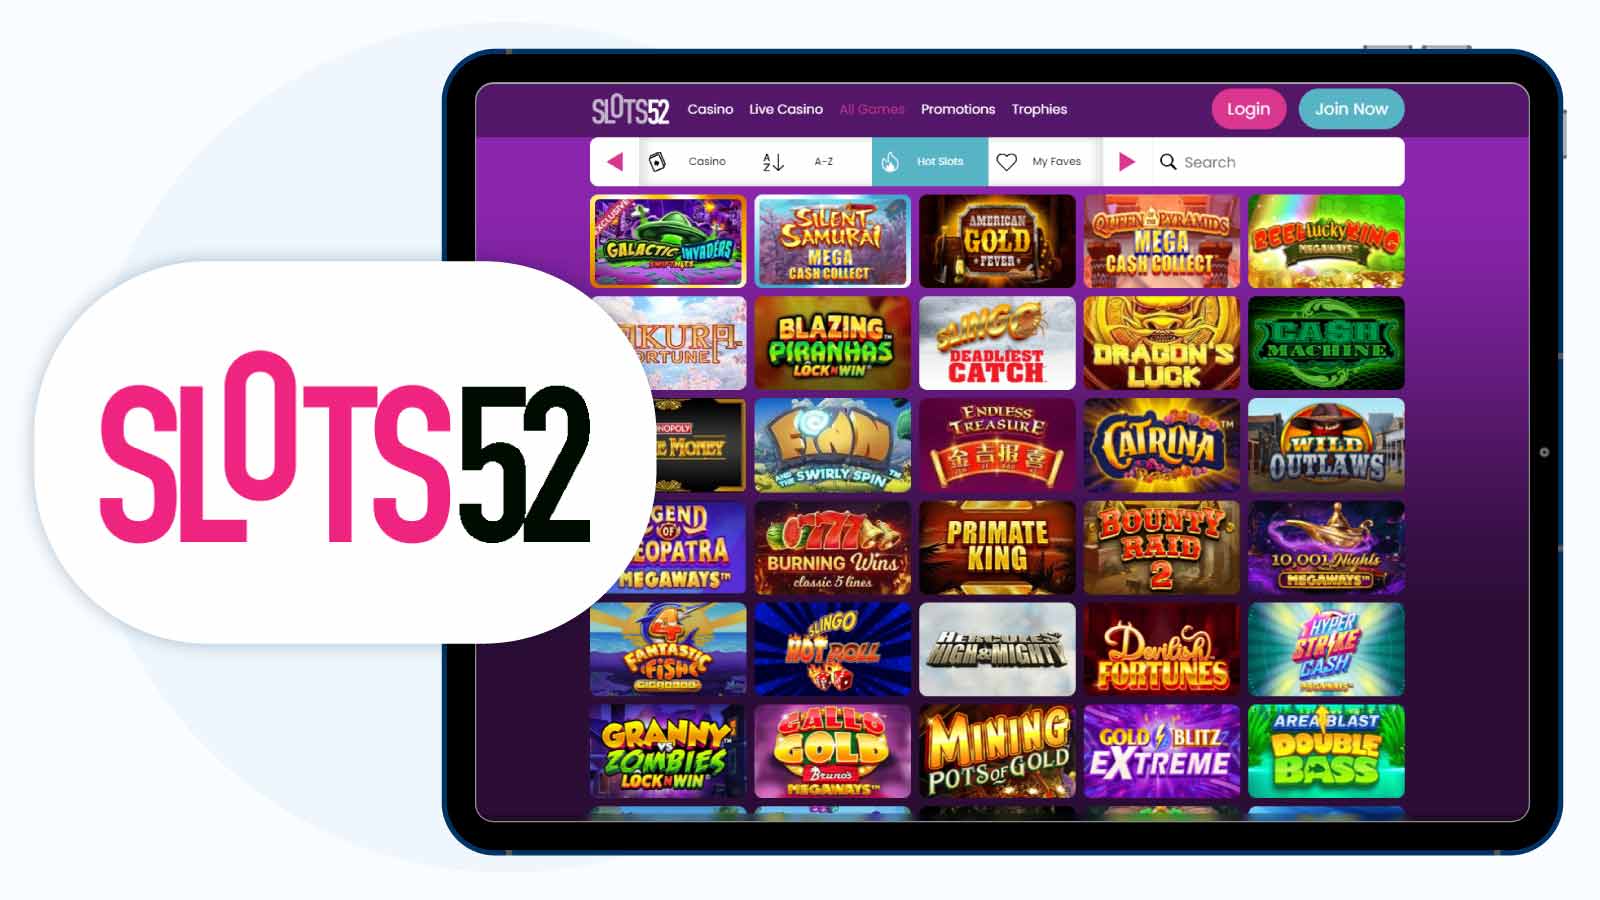 Best £5 Deposit Casino for Starburst Spins Slots52